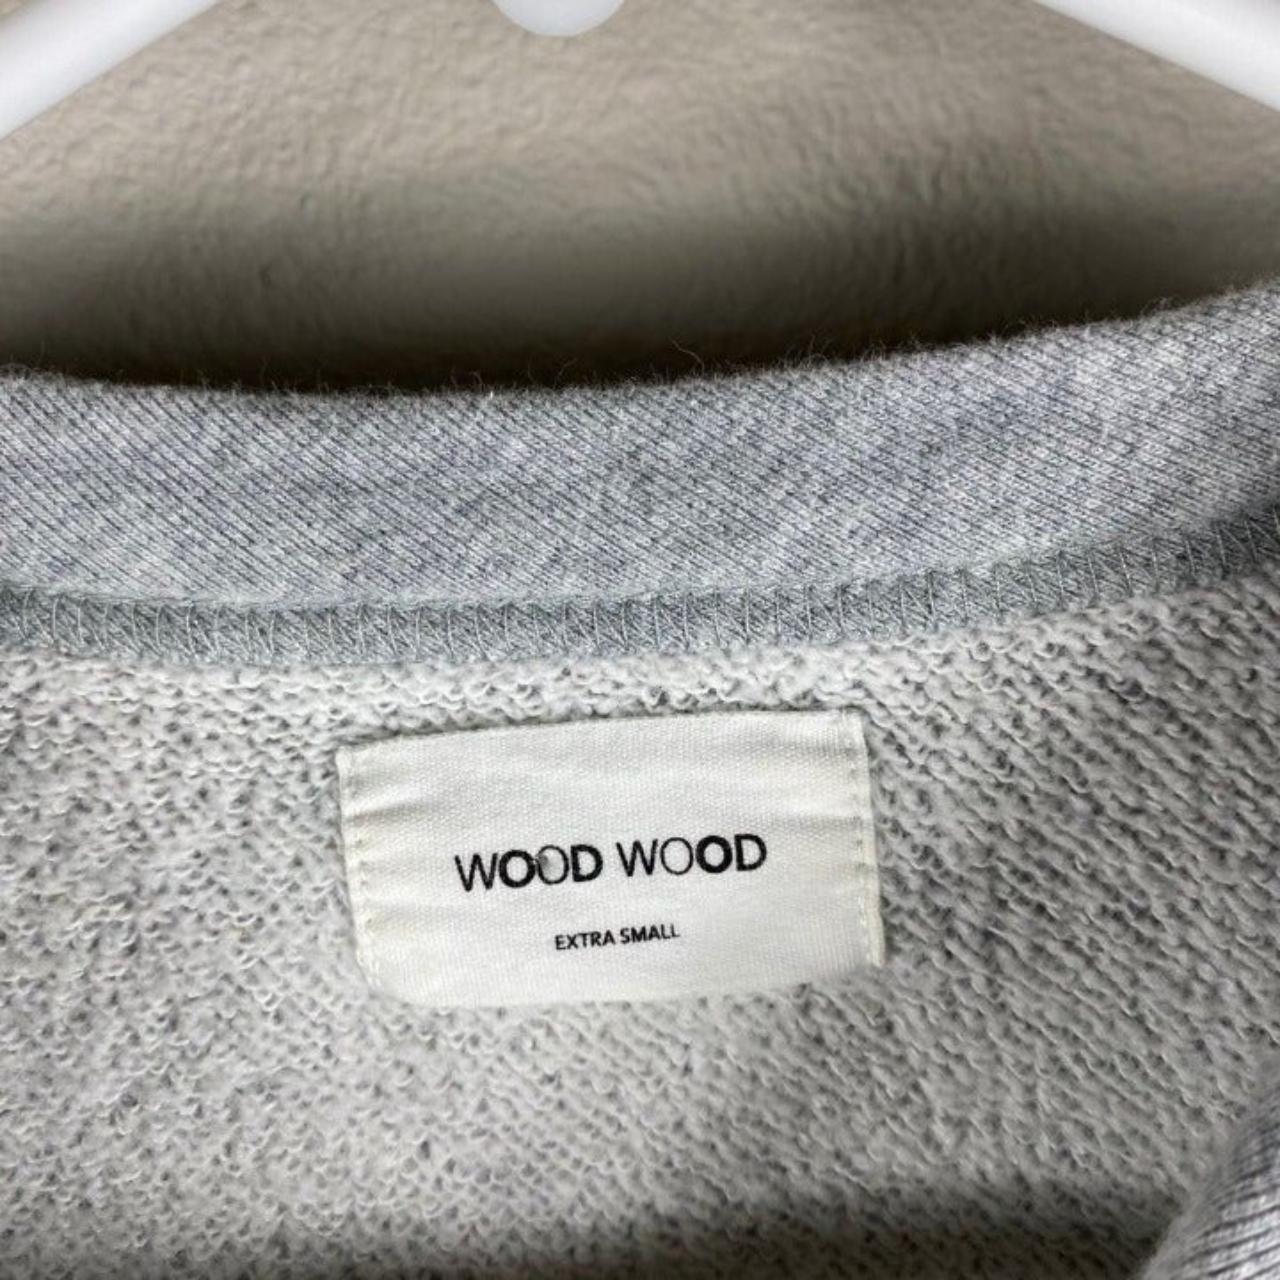 Wood Wood street wear grey men's “w